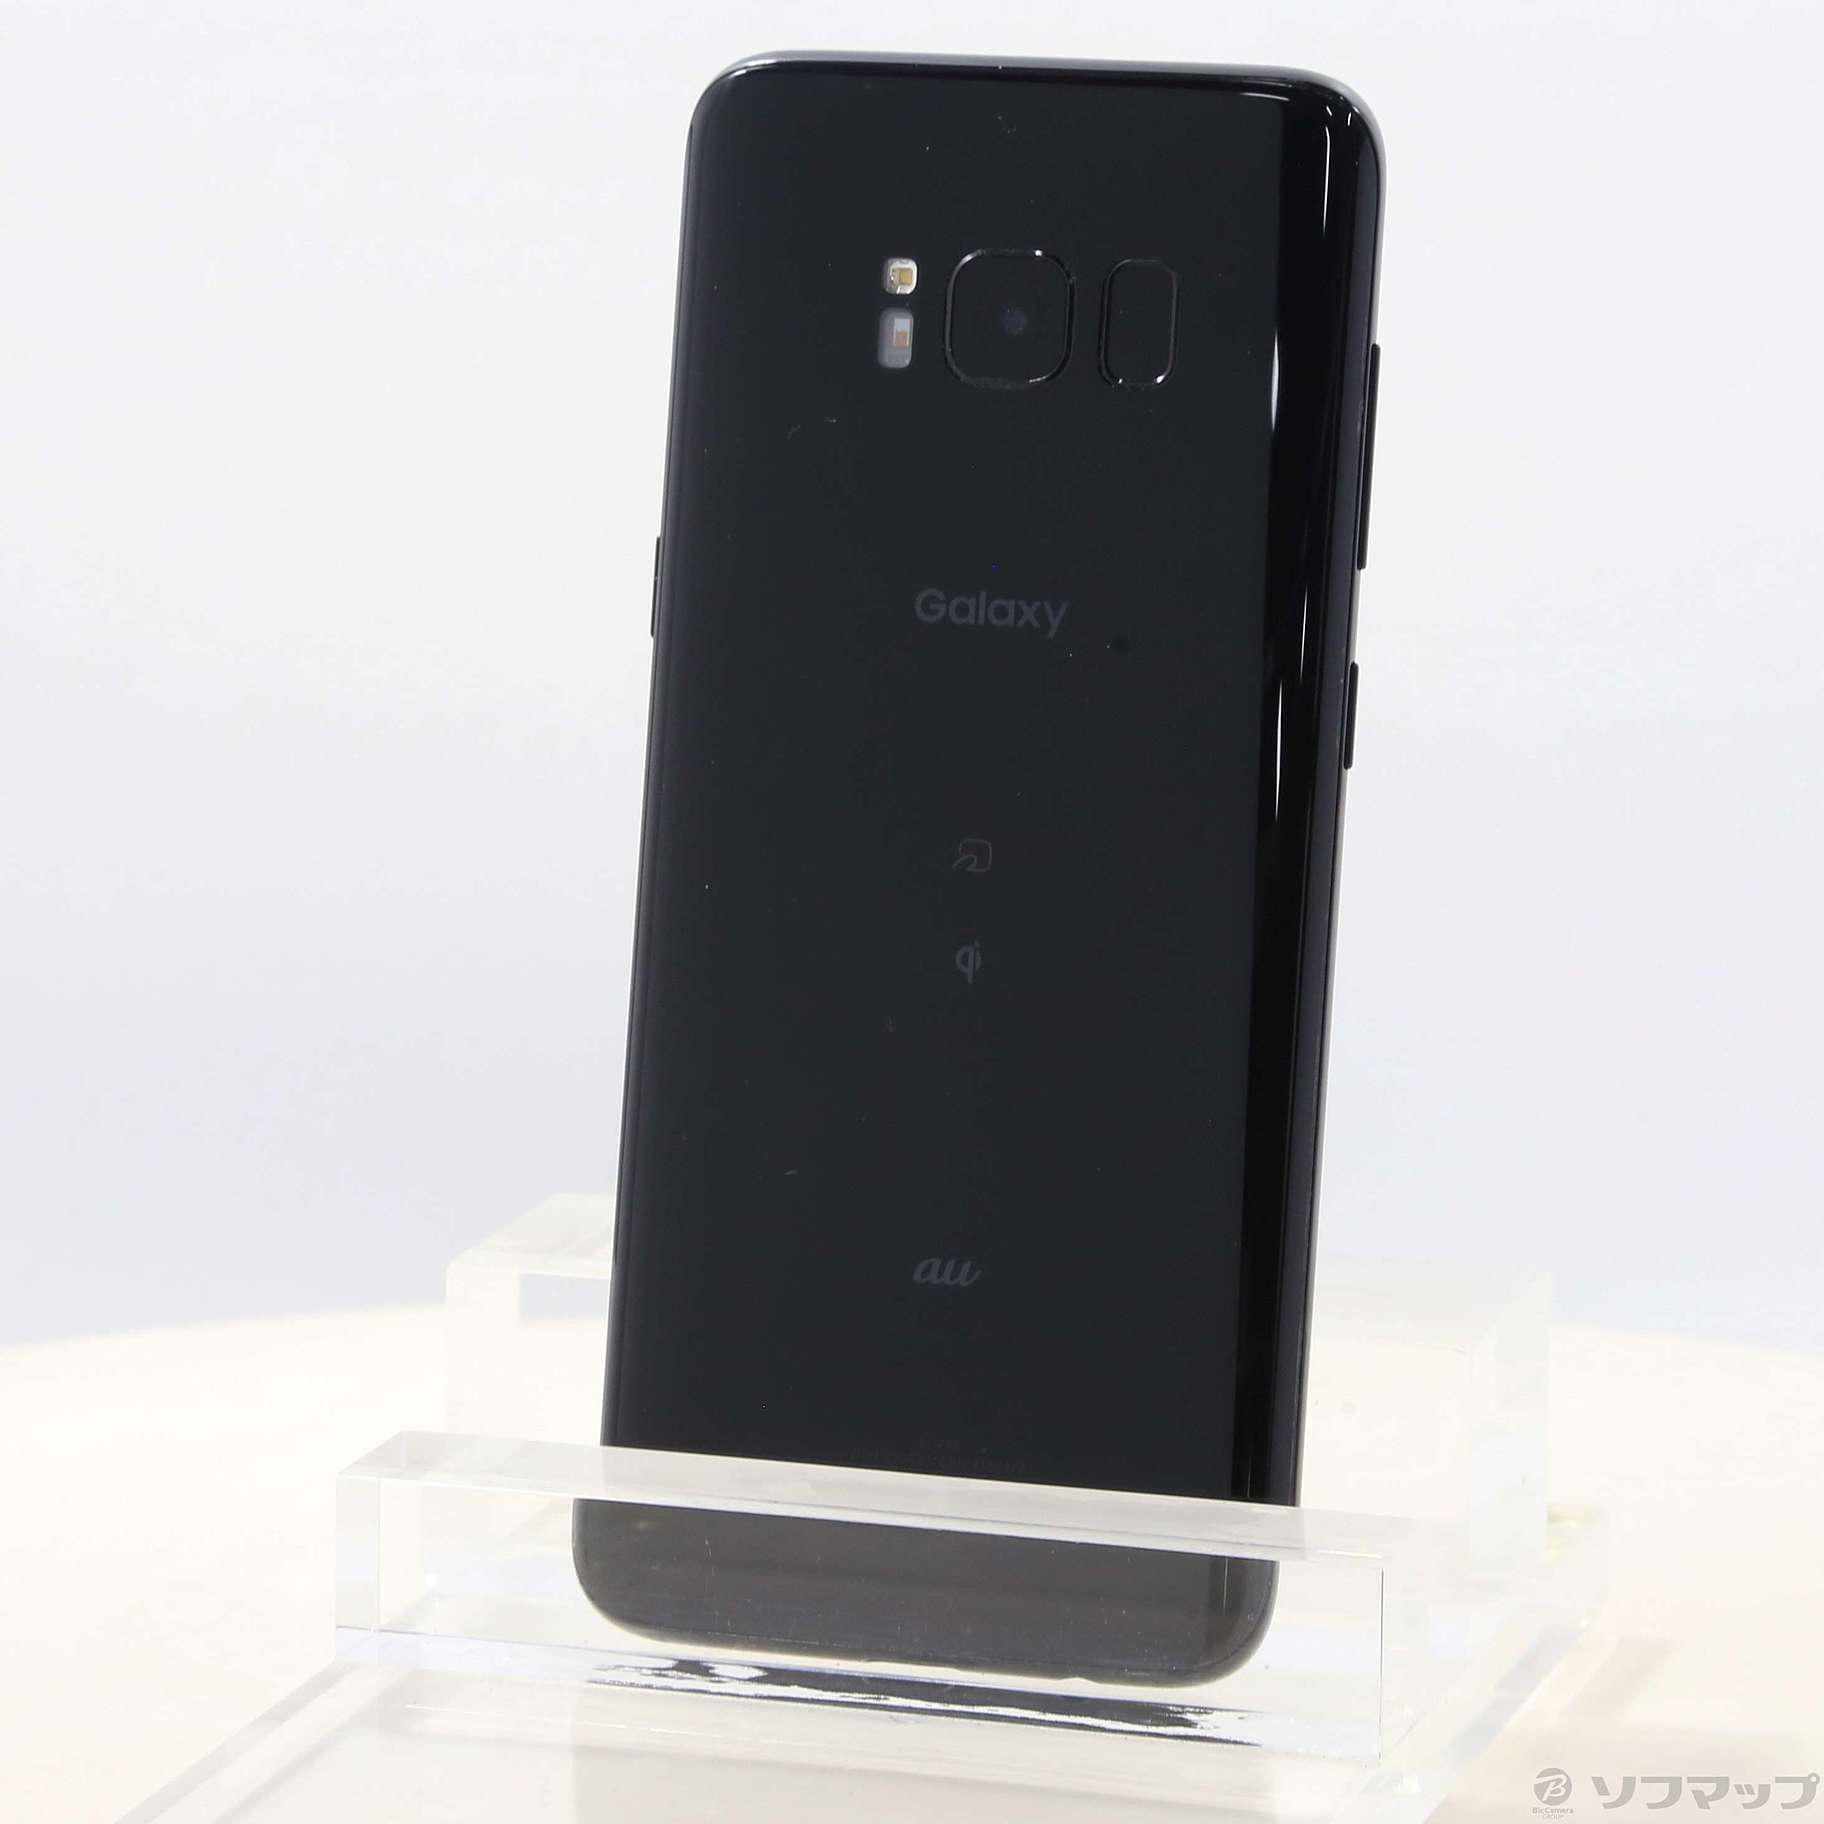 Galaxy S8 Black 64 GB auスマートフォン本体